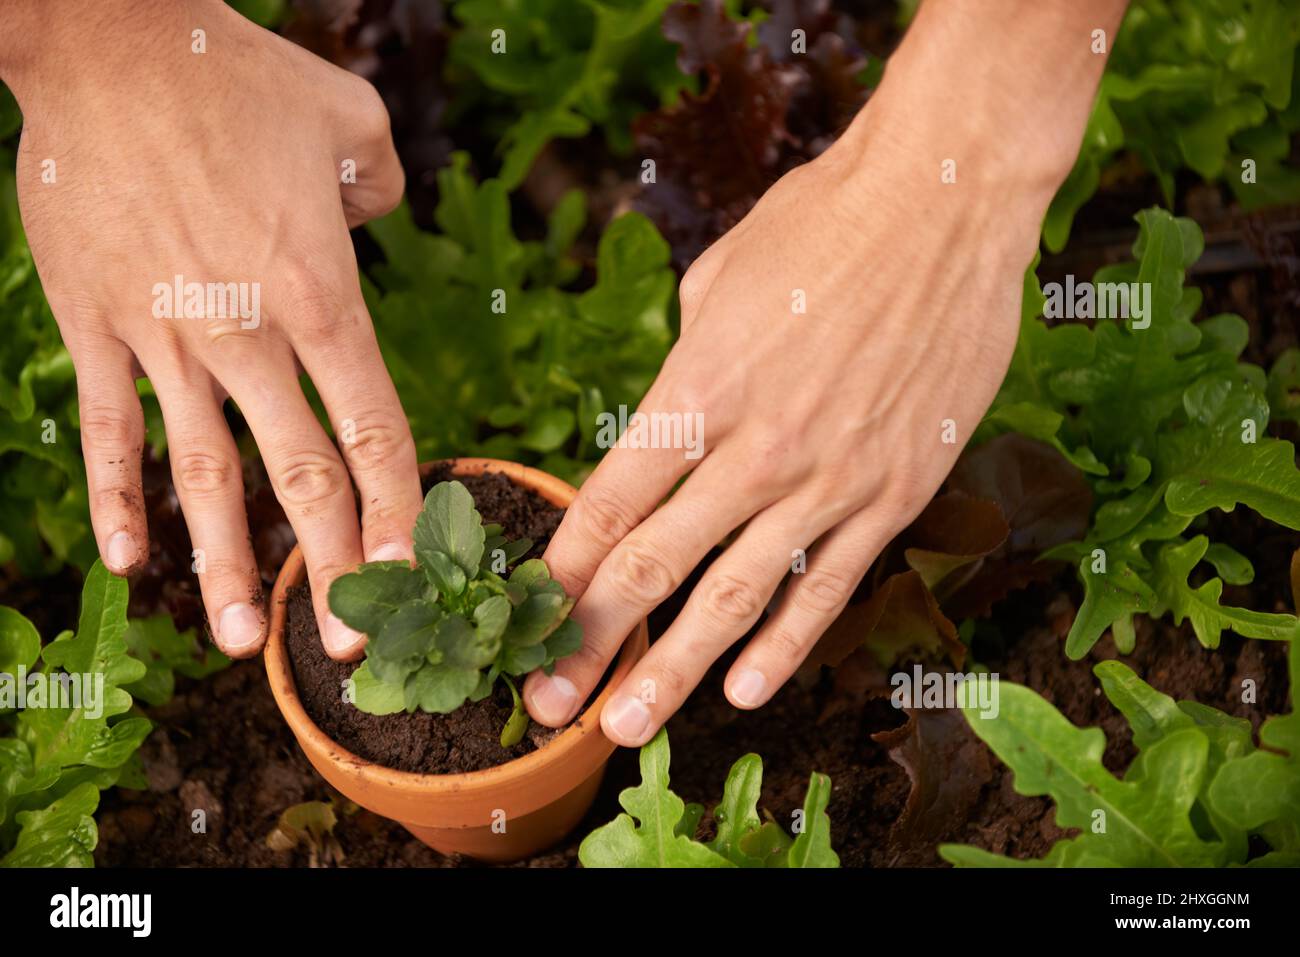 Ensuciando sus dedos. Tiro recortado de las manos de un hombre plantando algunos vegetales frondosos en una caja de jardín. Foto de stock